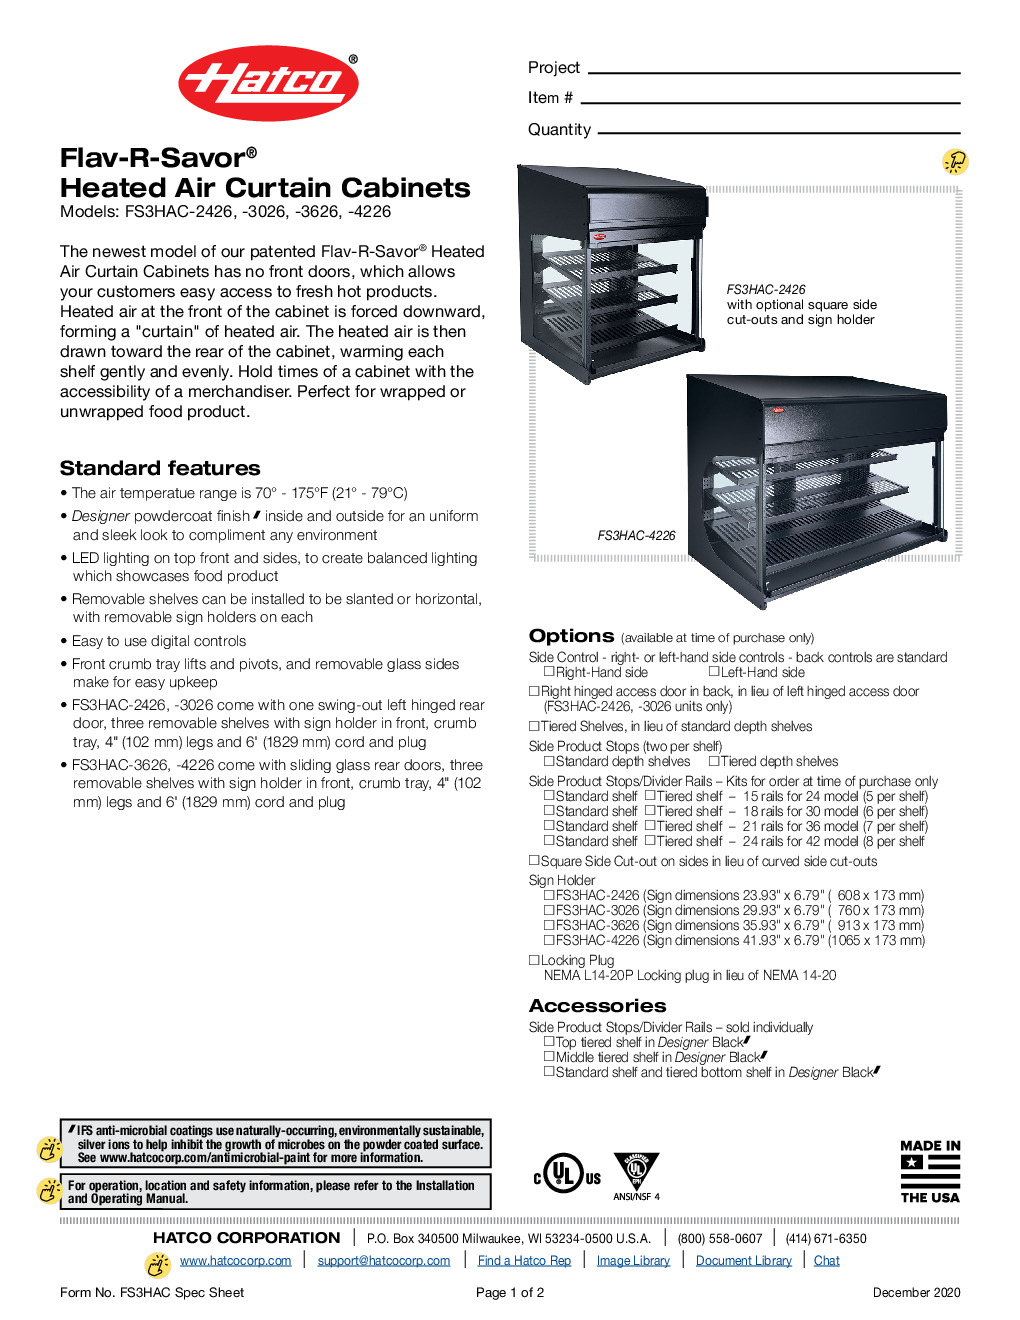 Hatco FS3HAC-3626 Countertop Hot Food Display Case